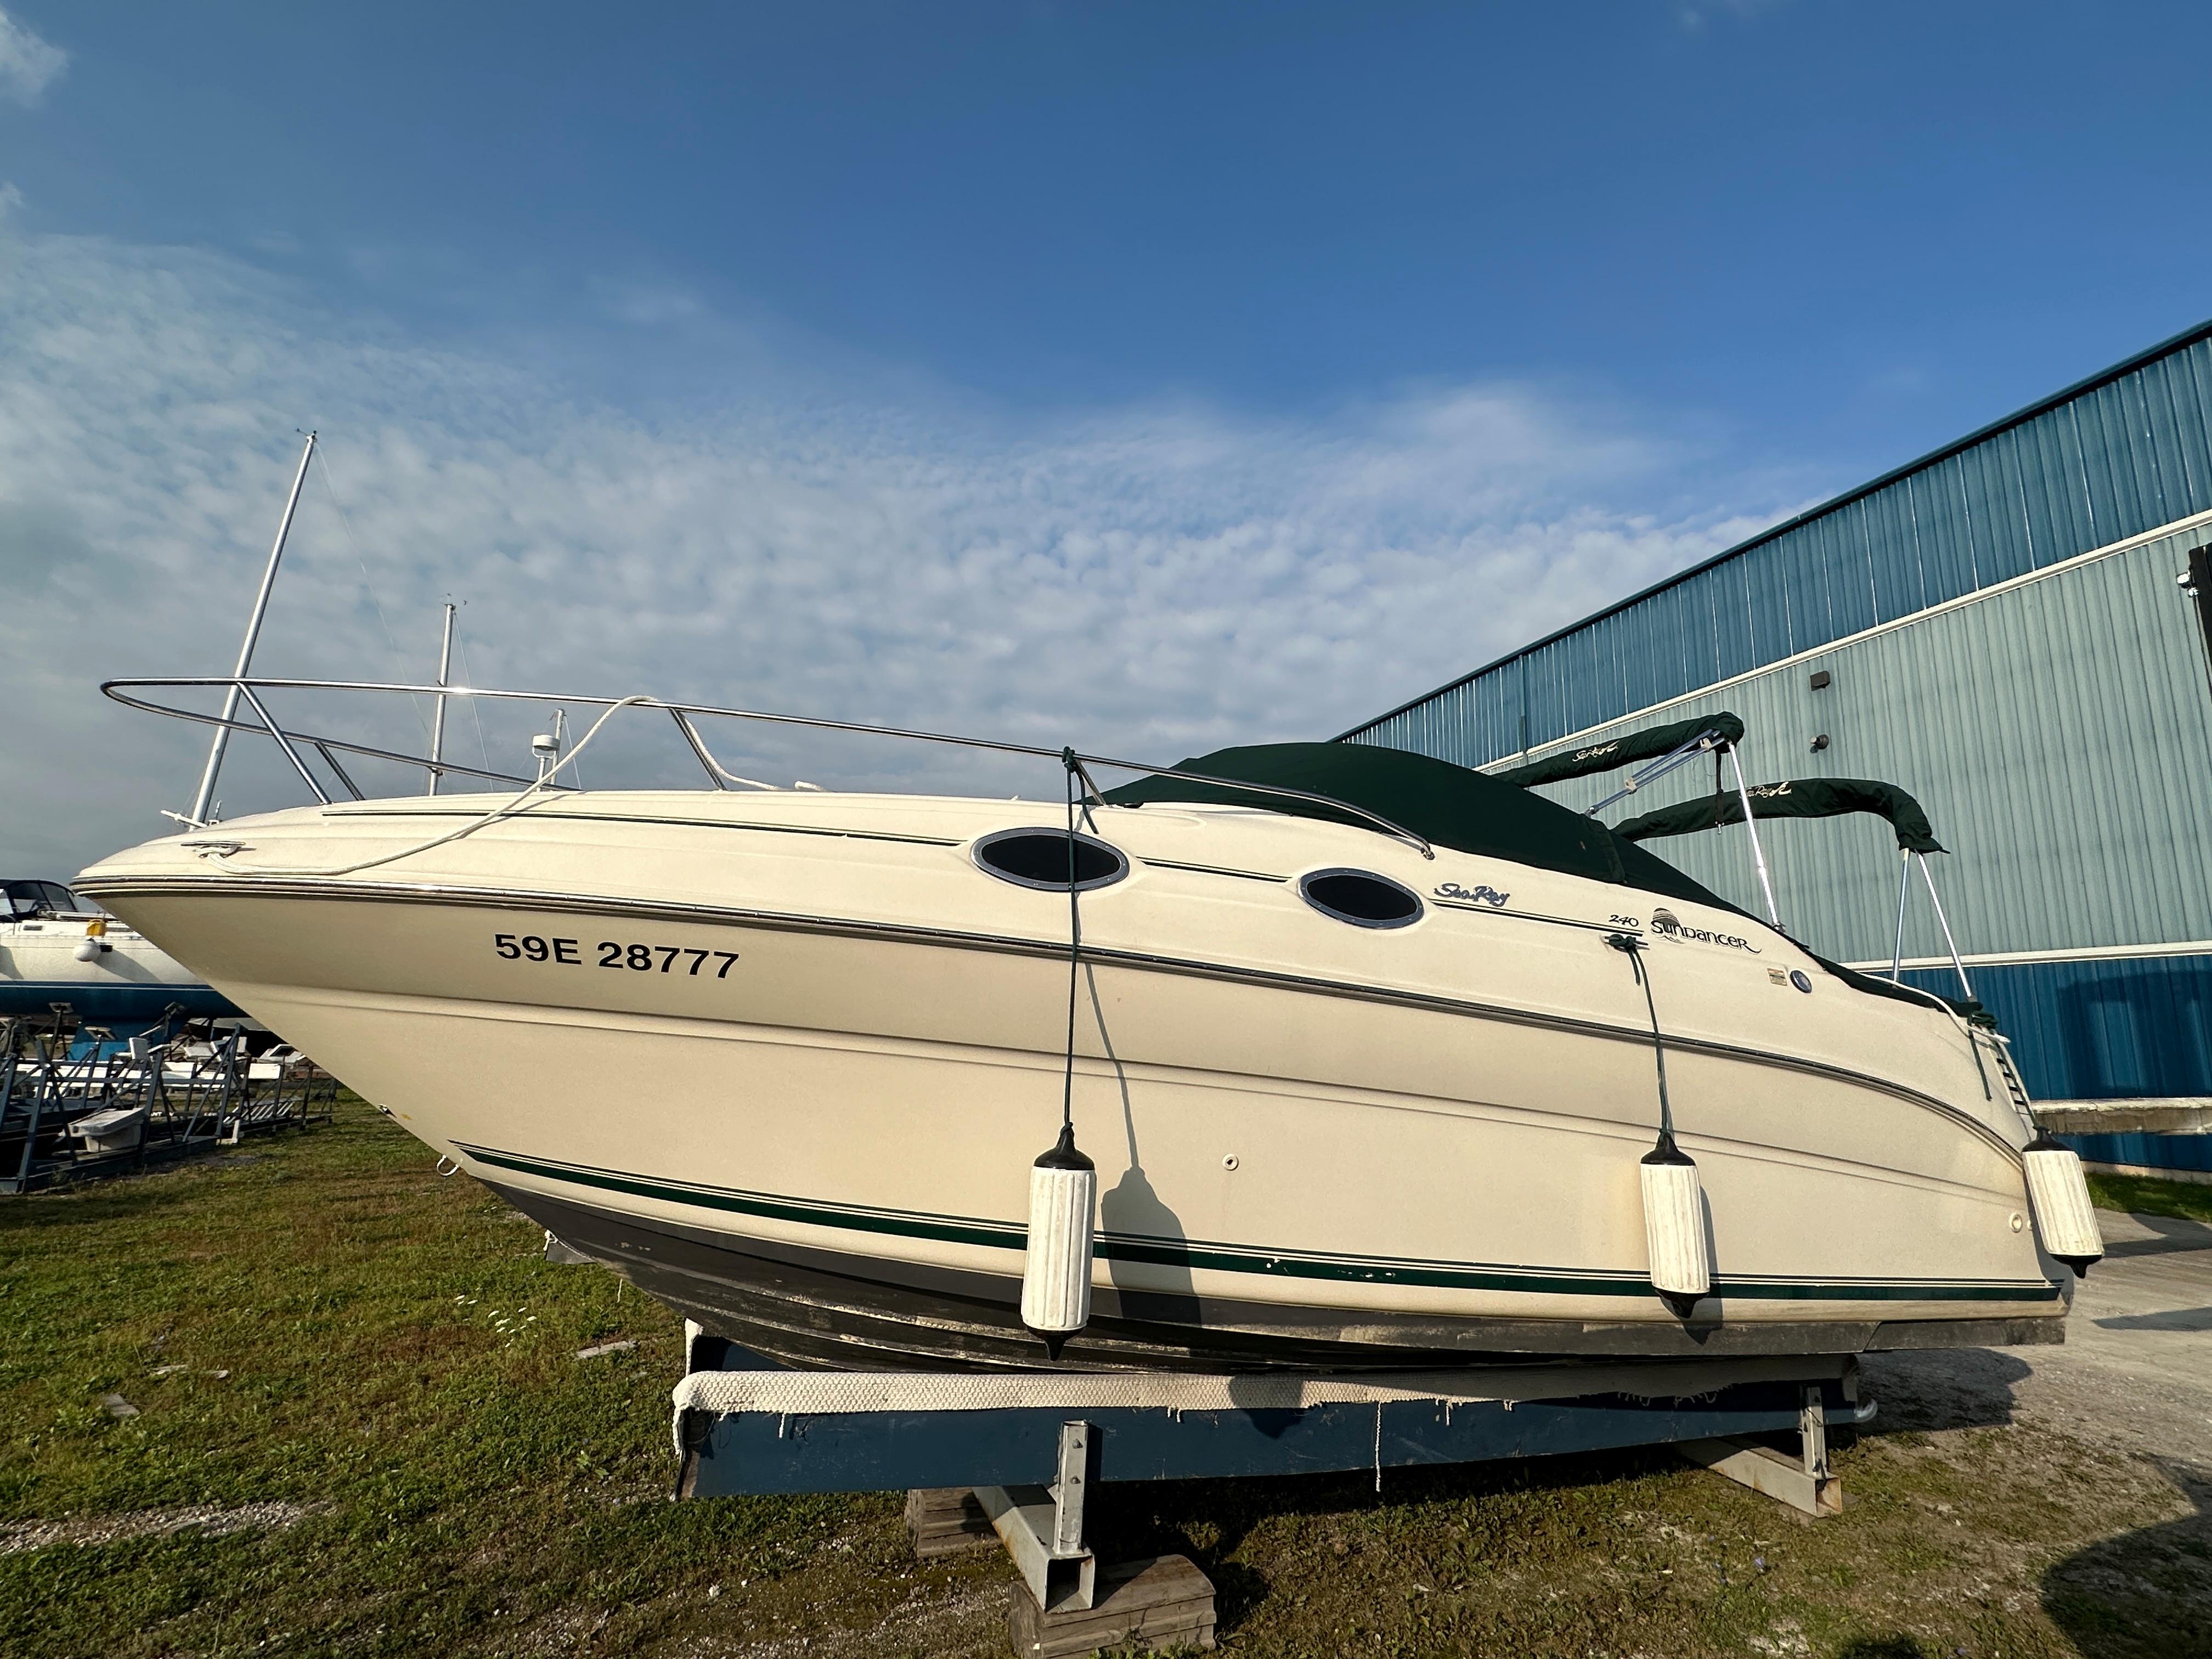 2000 Sea Ray 240 Sundancer, Midland Canada - boats.com